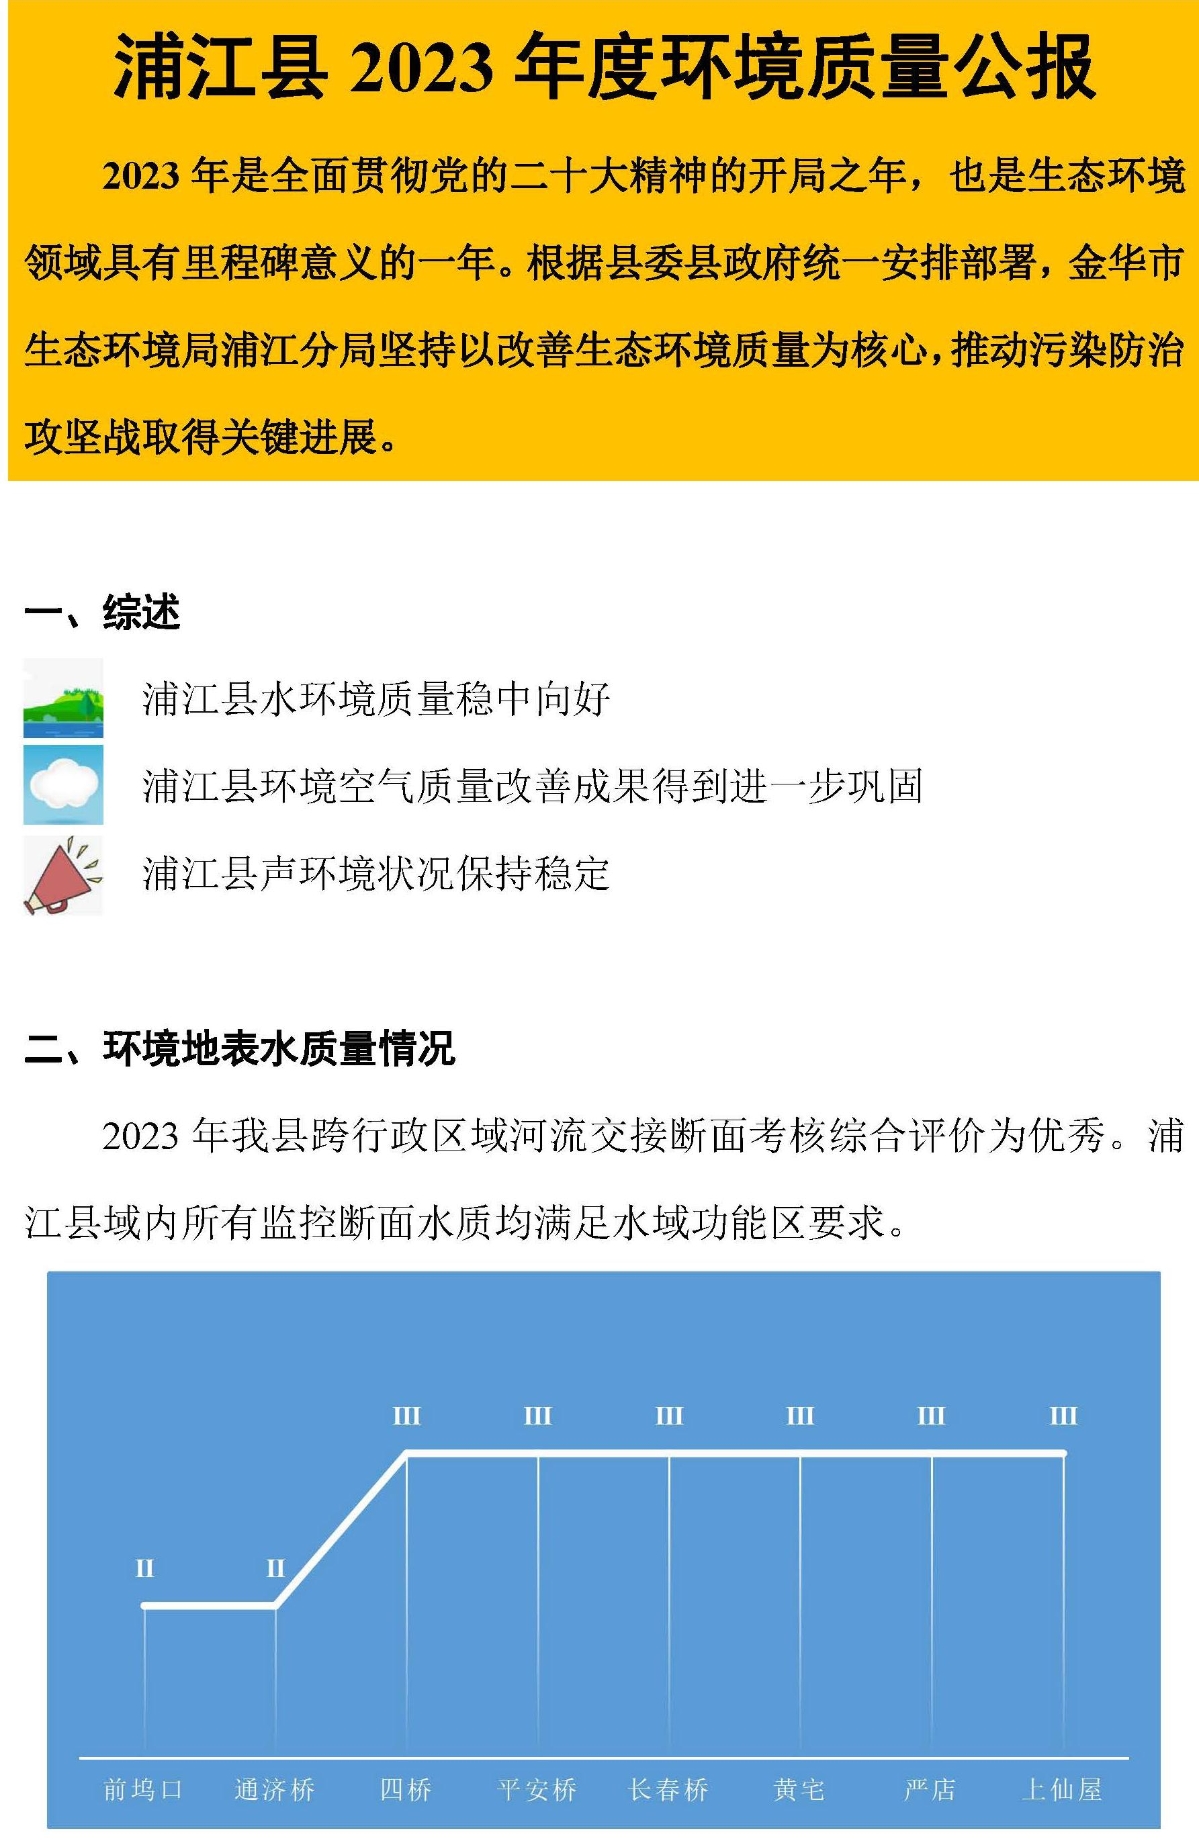 浦江县2023年度环境质量公报图解(2)_页面_2.jpg